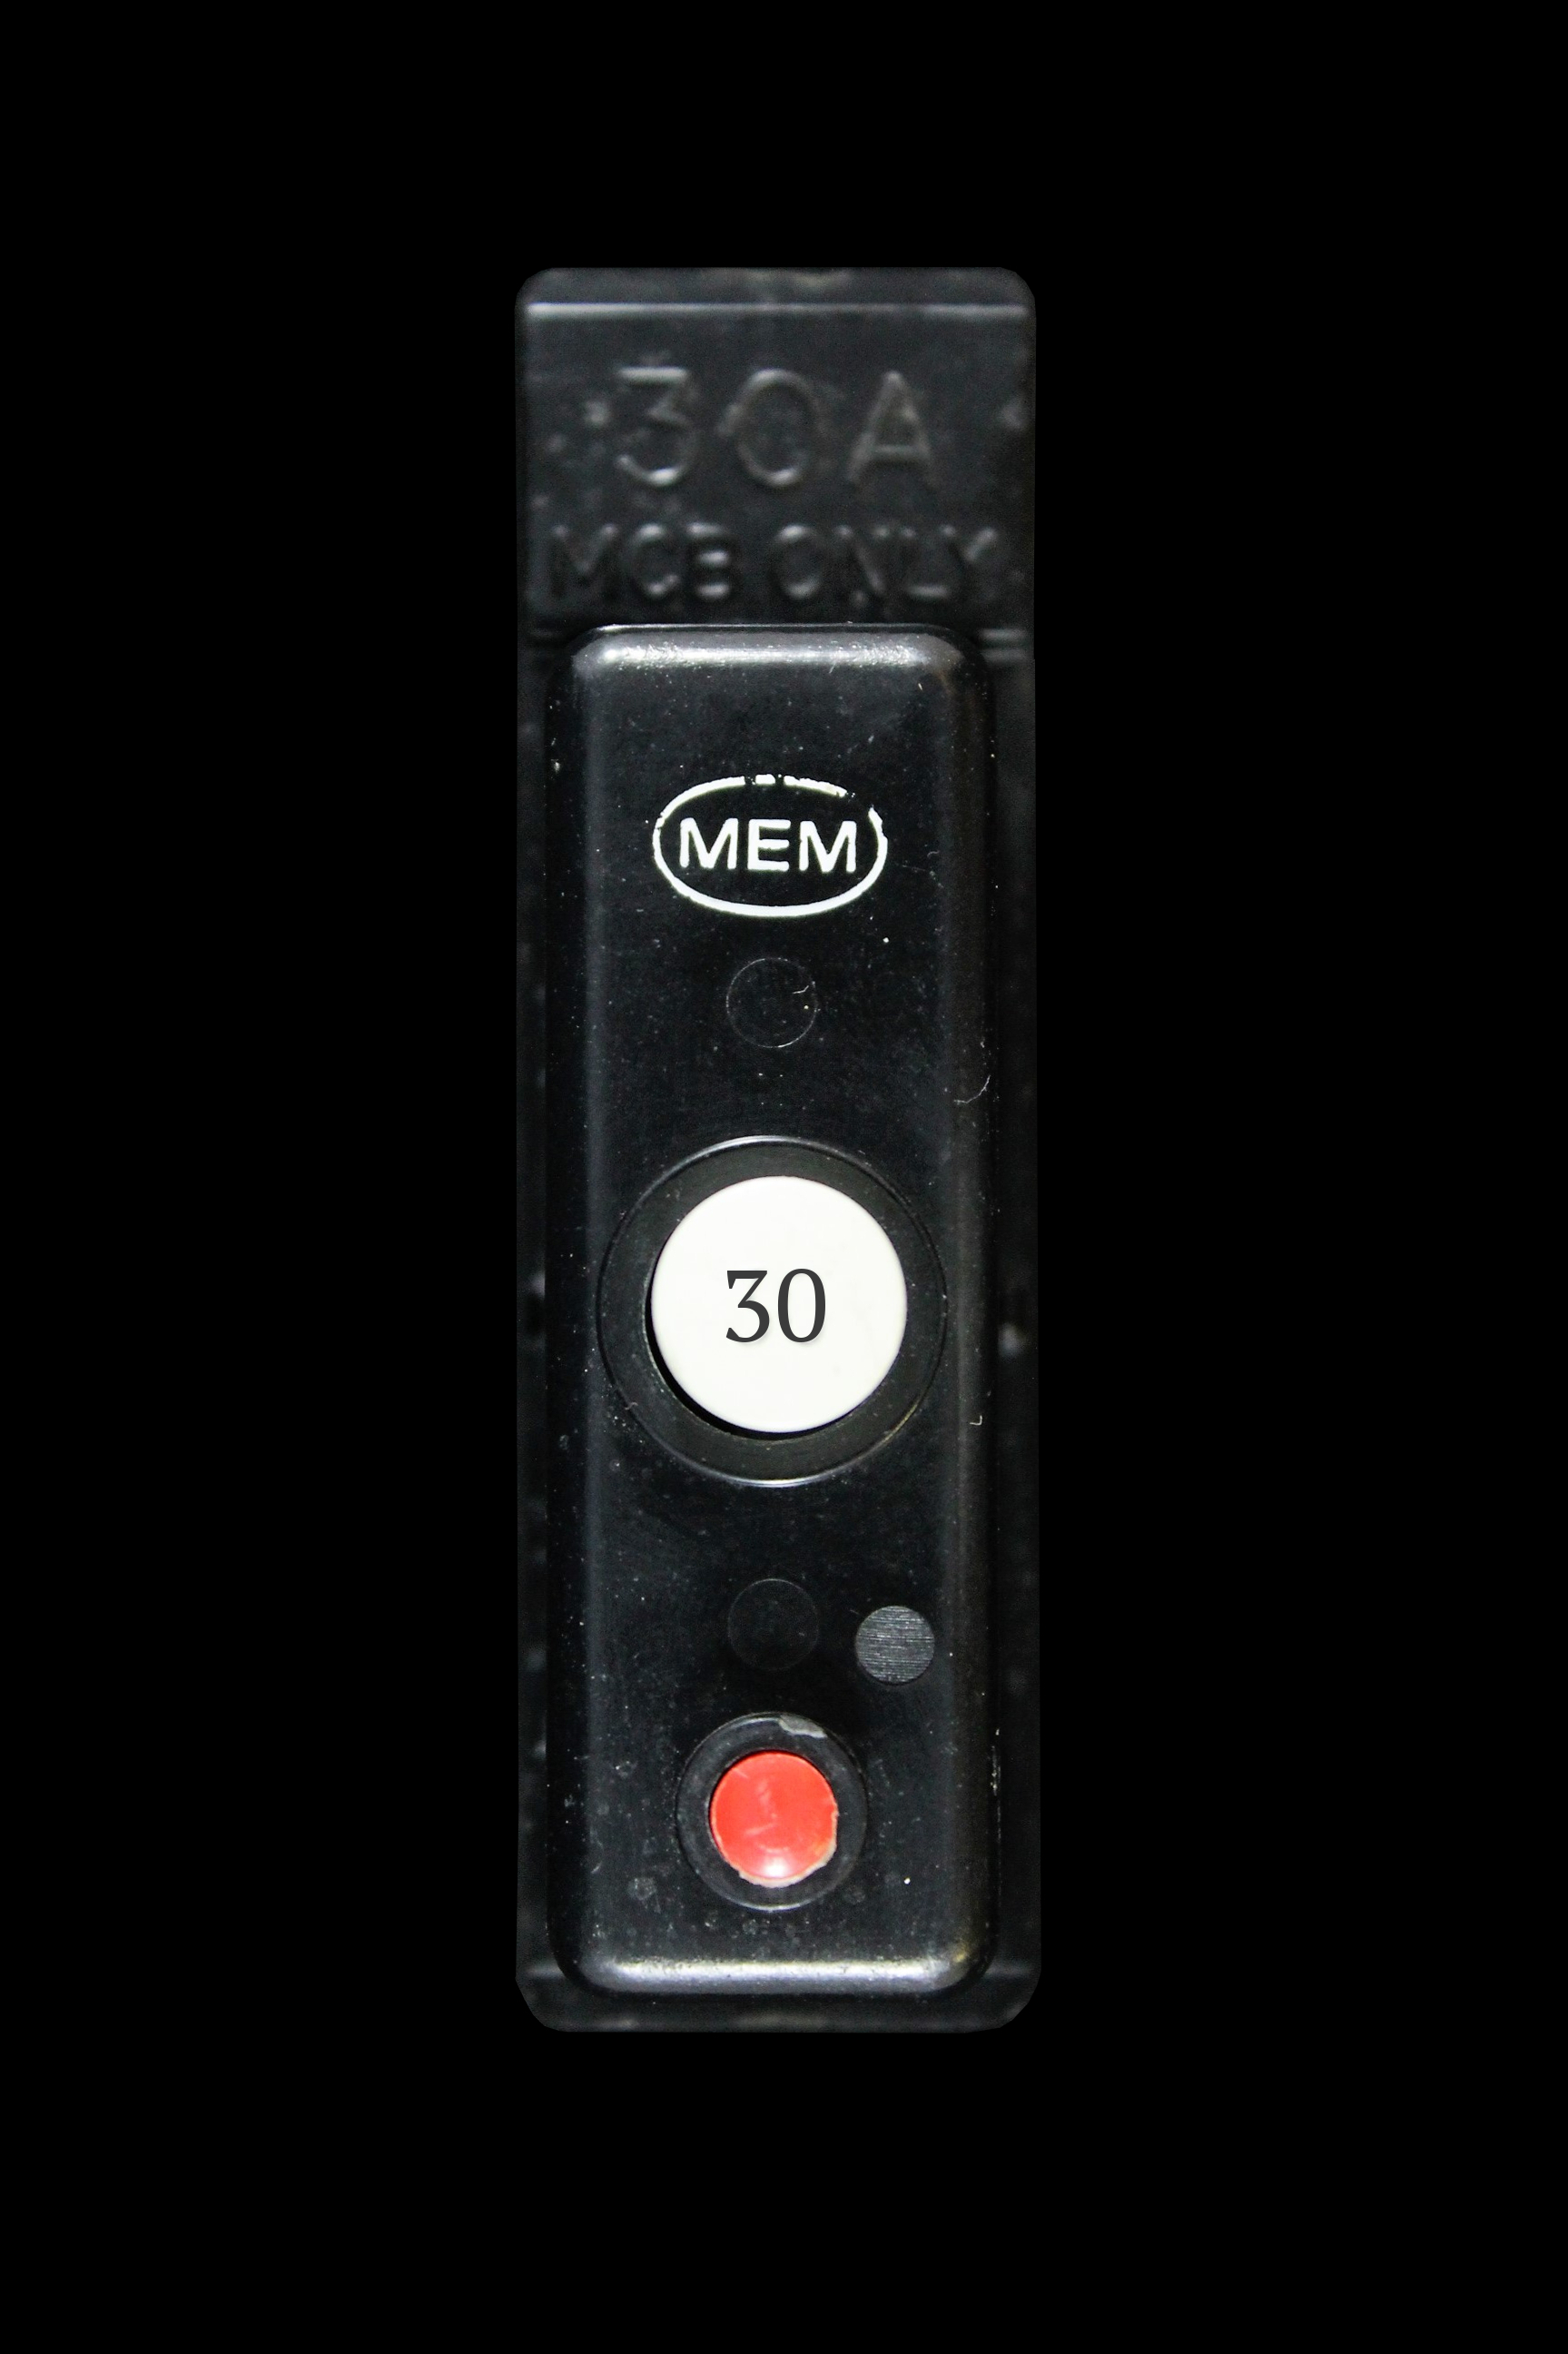 MEM 30 AMP M1.5 MCB CIRCUIT BREAKER PUSH PLUG IN